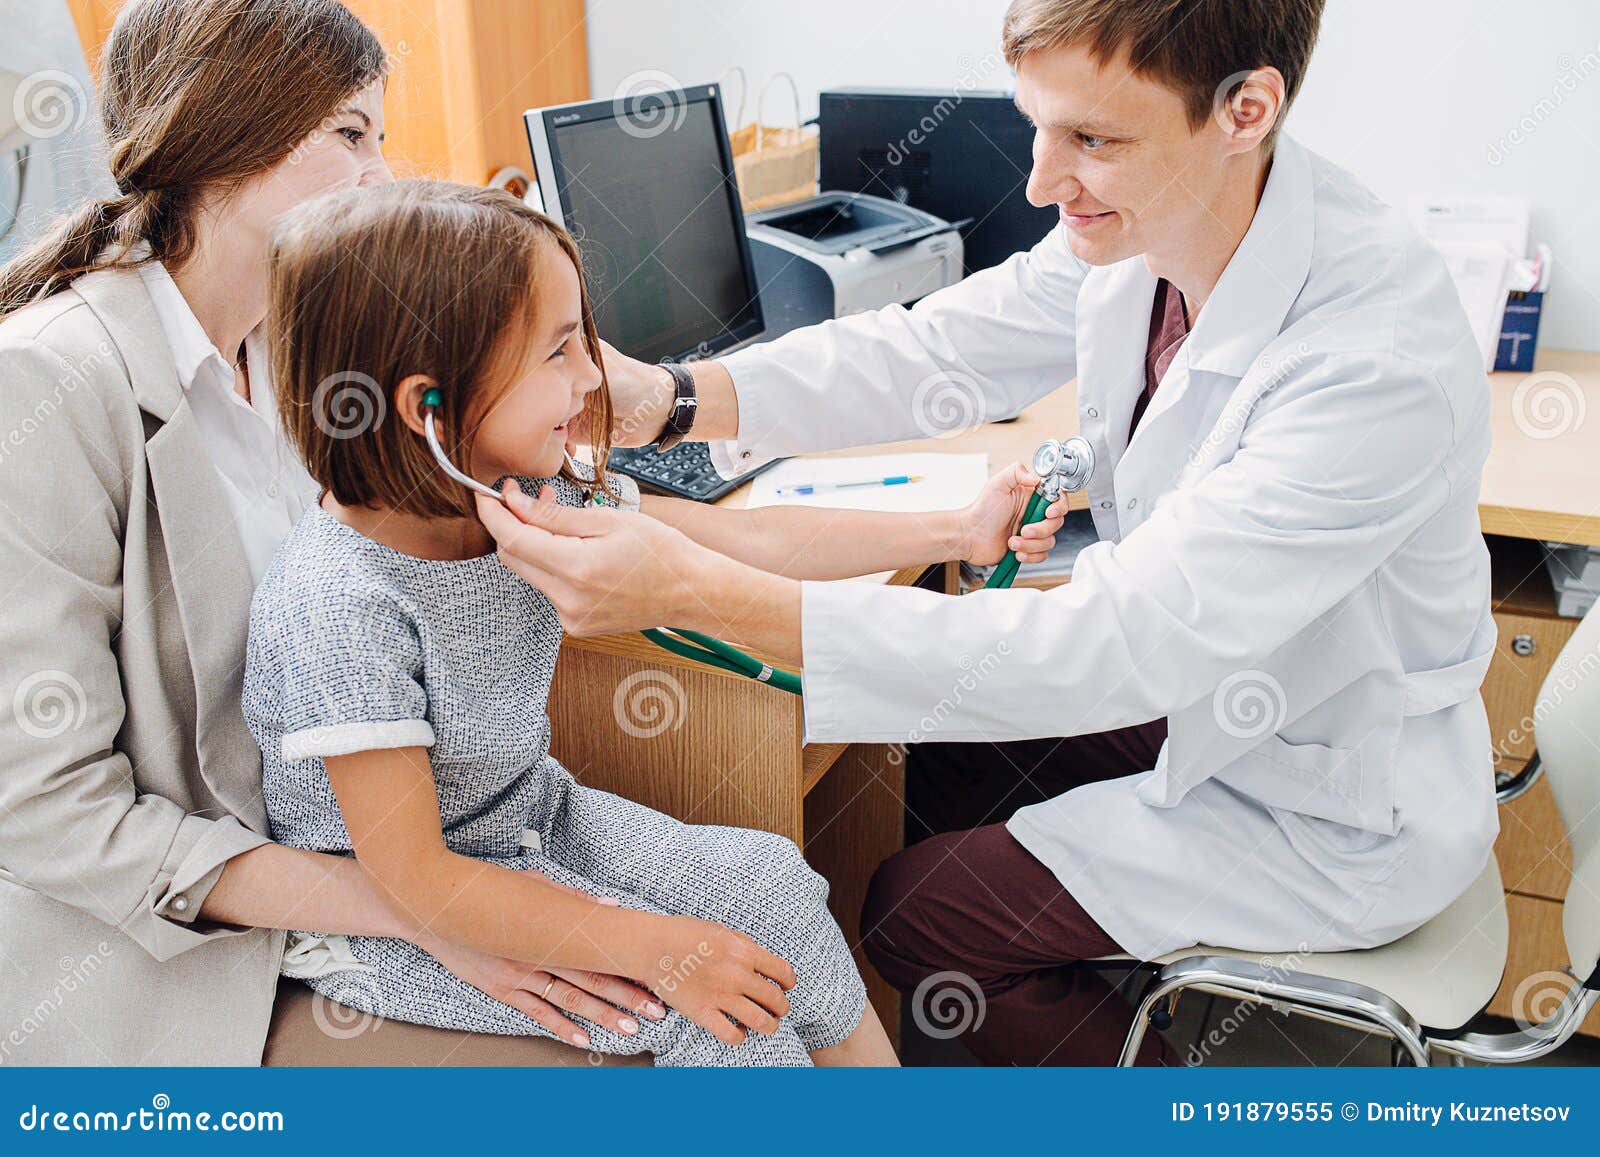 Exam doctor. Children Doctor examination девочек. Children Doctor examination девочек 12 лет. Children Doctor examination девочек гинеколог. Медосмотр девочек стетоскопом.